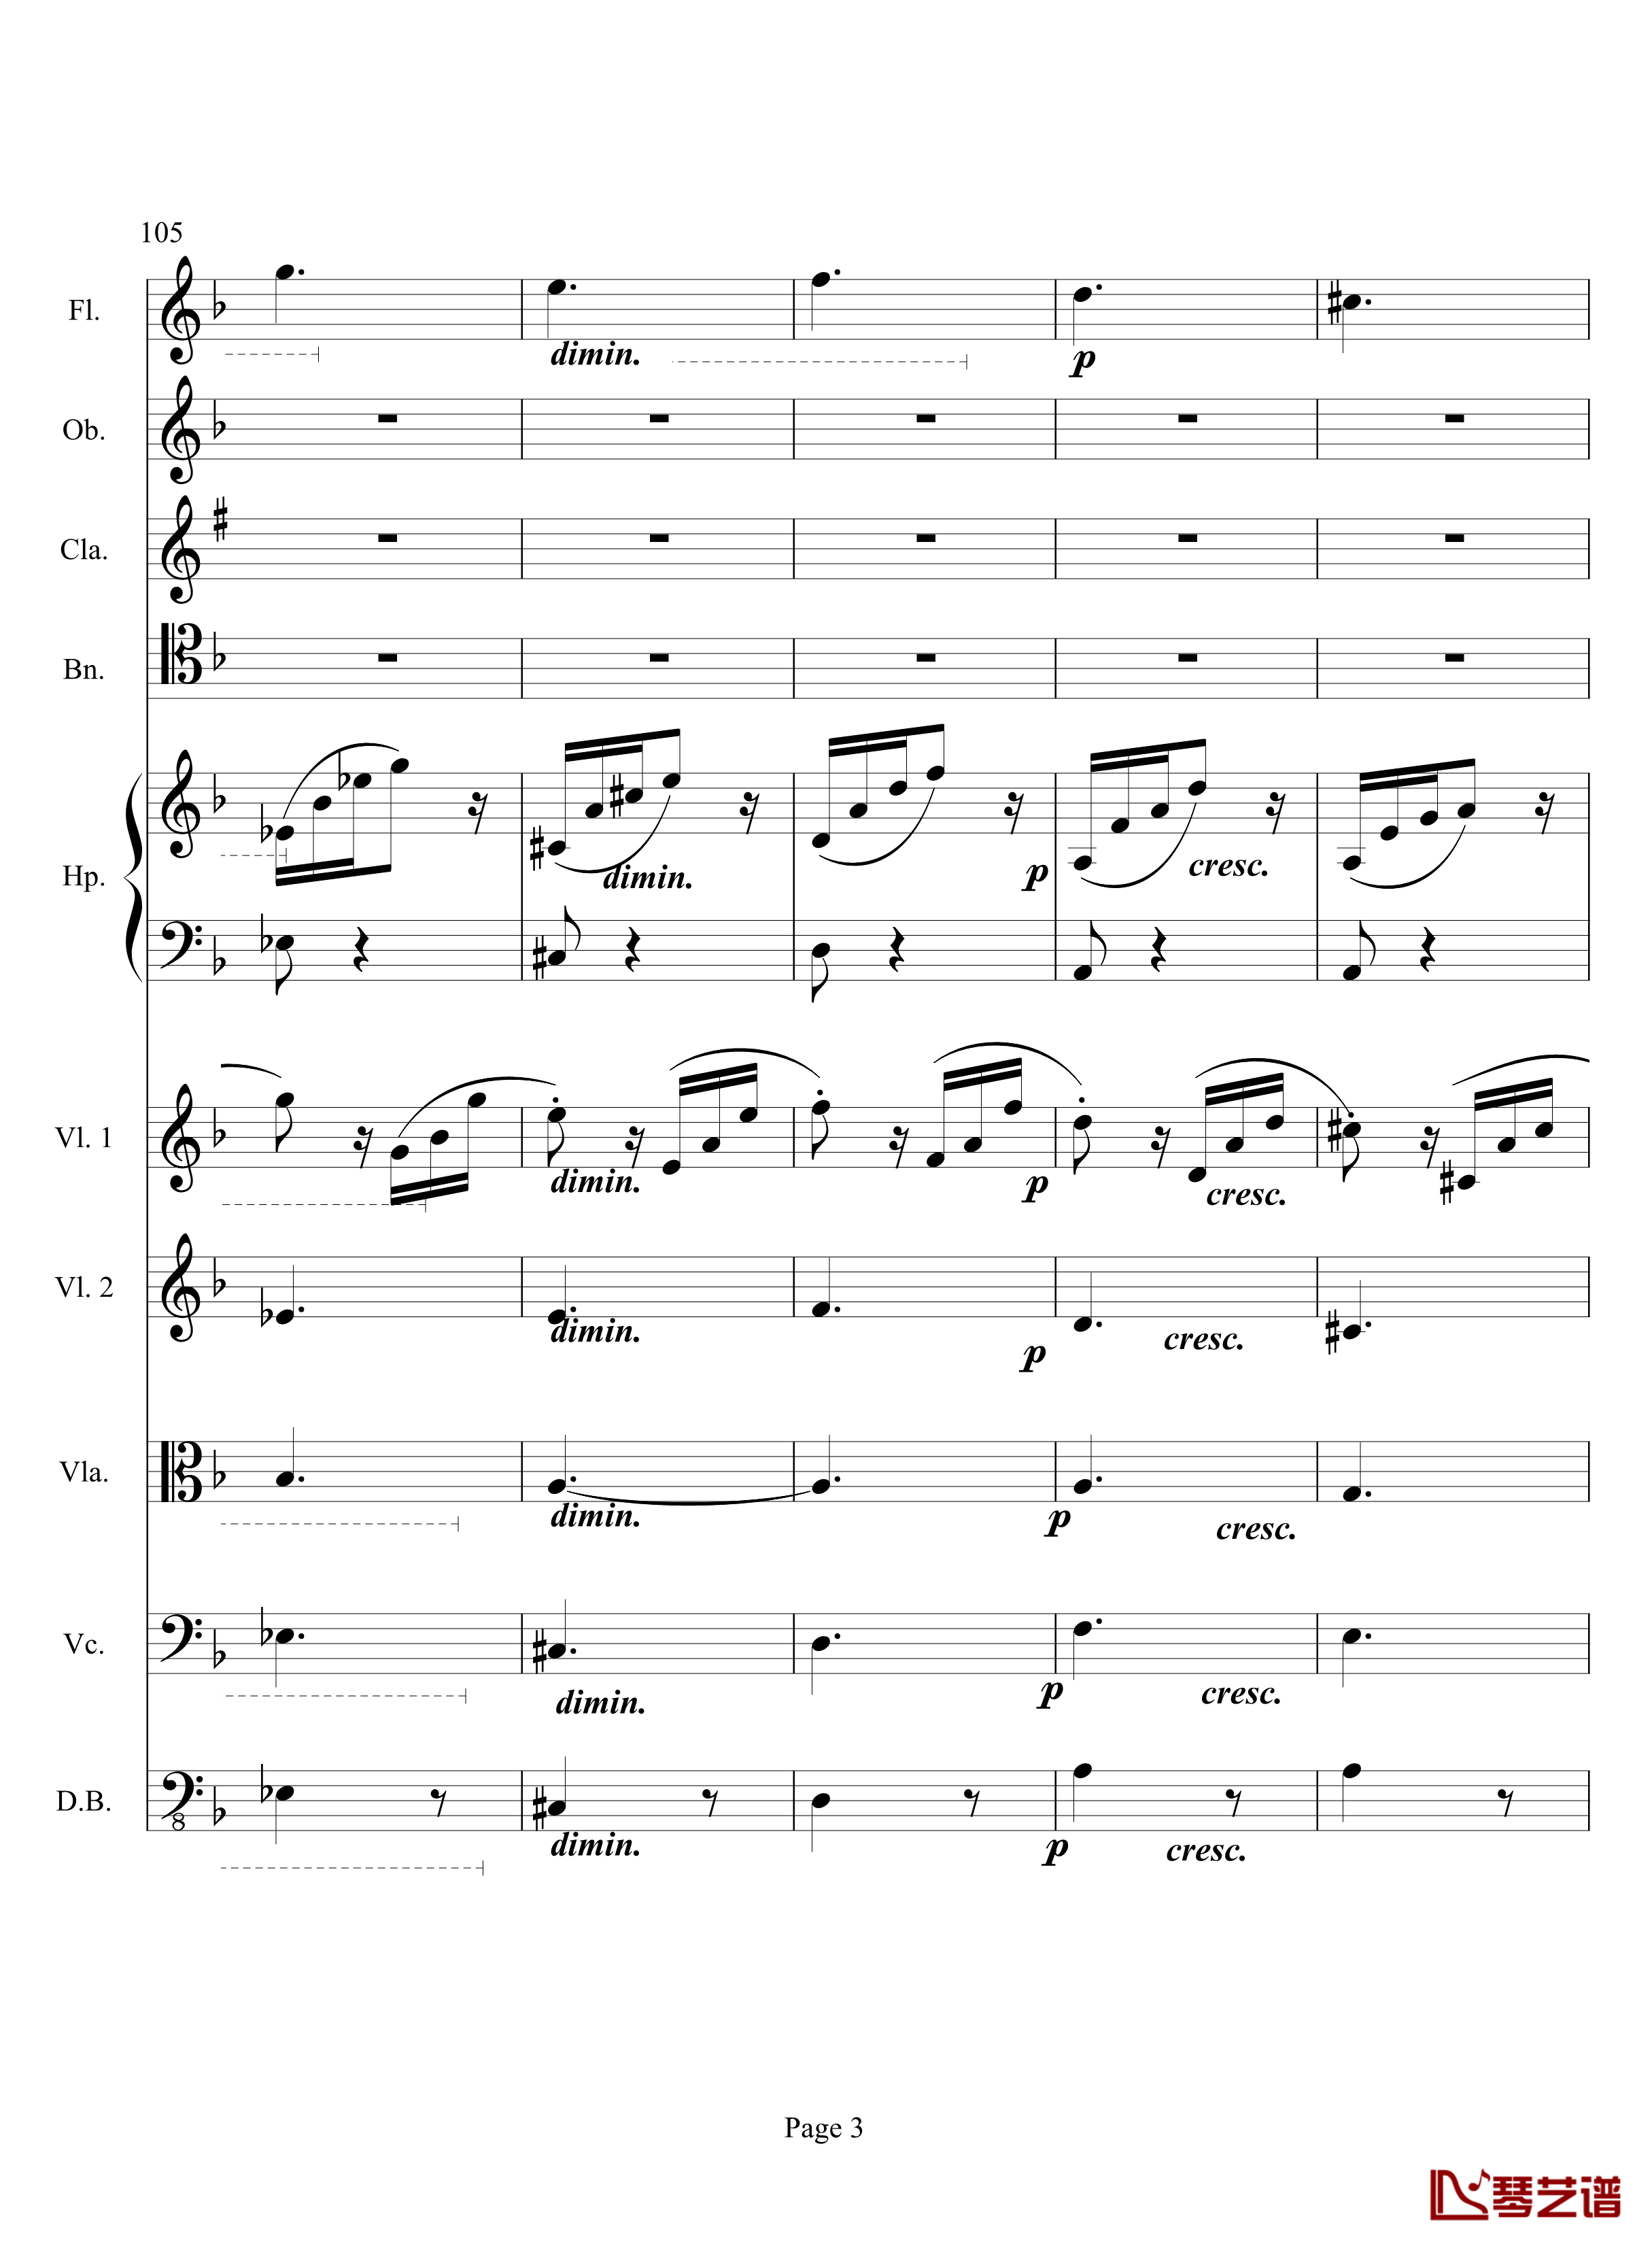 奏鸣曲之交响钢琴谱-第17首-Ⅲ-贝多芬-beethoven3